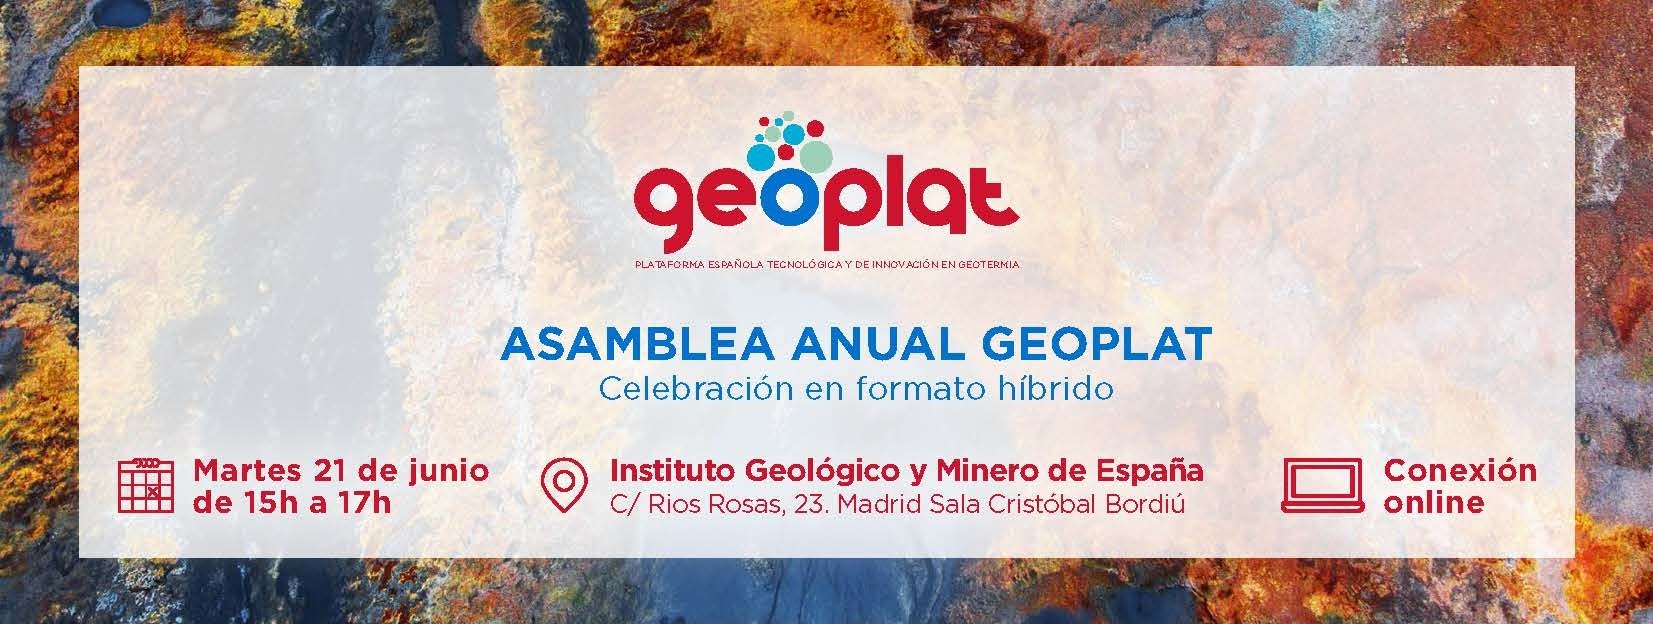 GEOPLAT celebra su Asamblea Anual constatando el compromiso del tejido empresarial español por desarrollar esta energía renovable